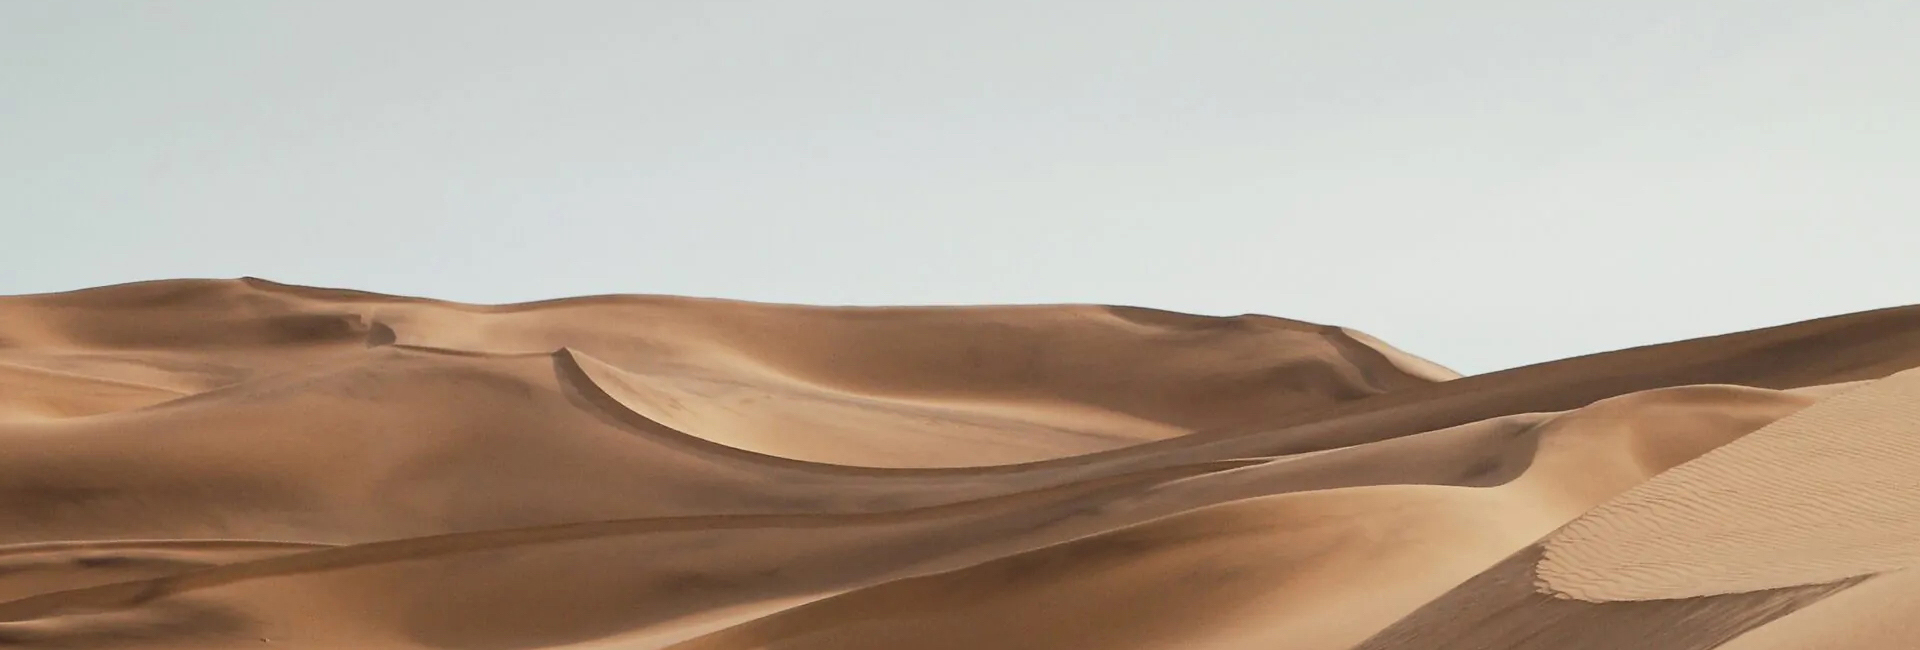 desert-sand-hills